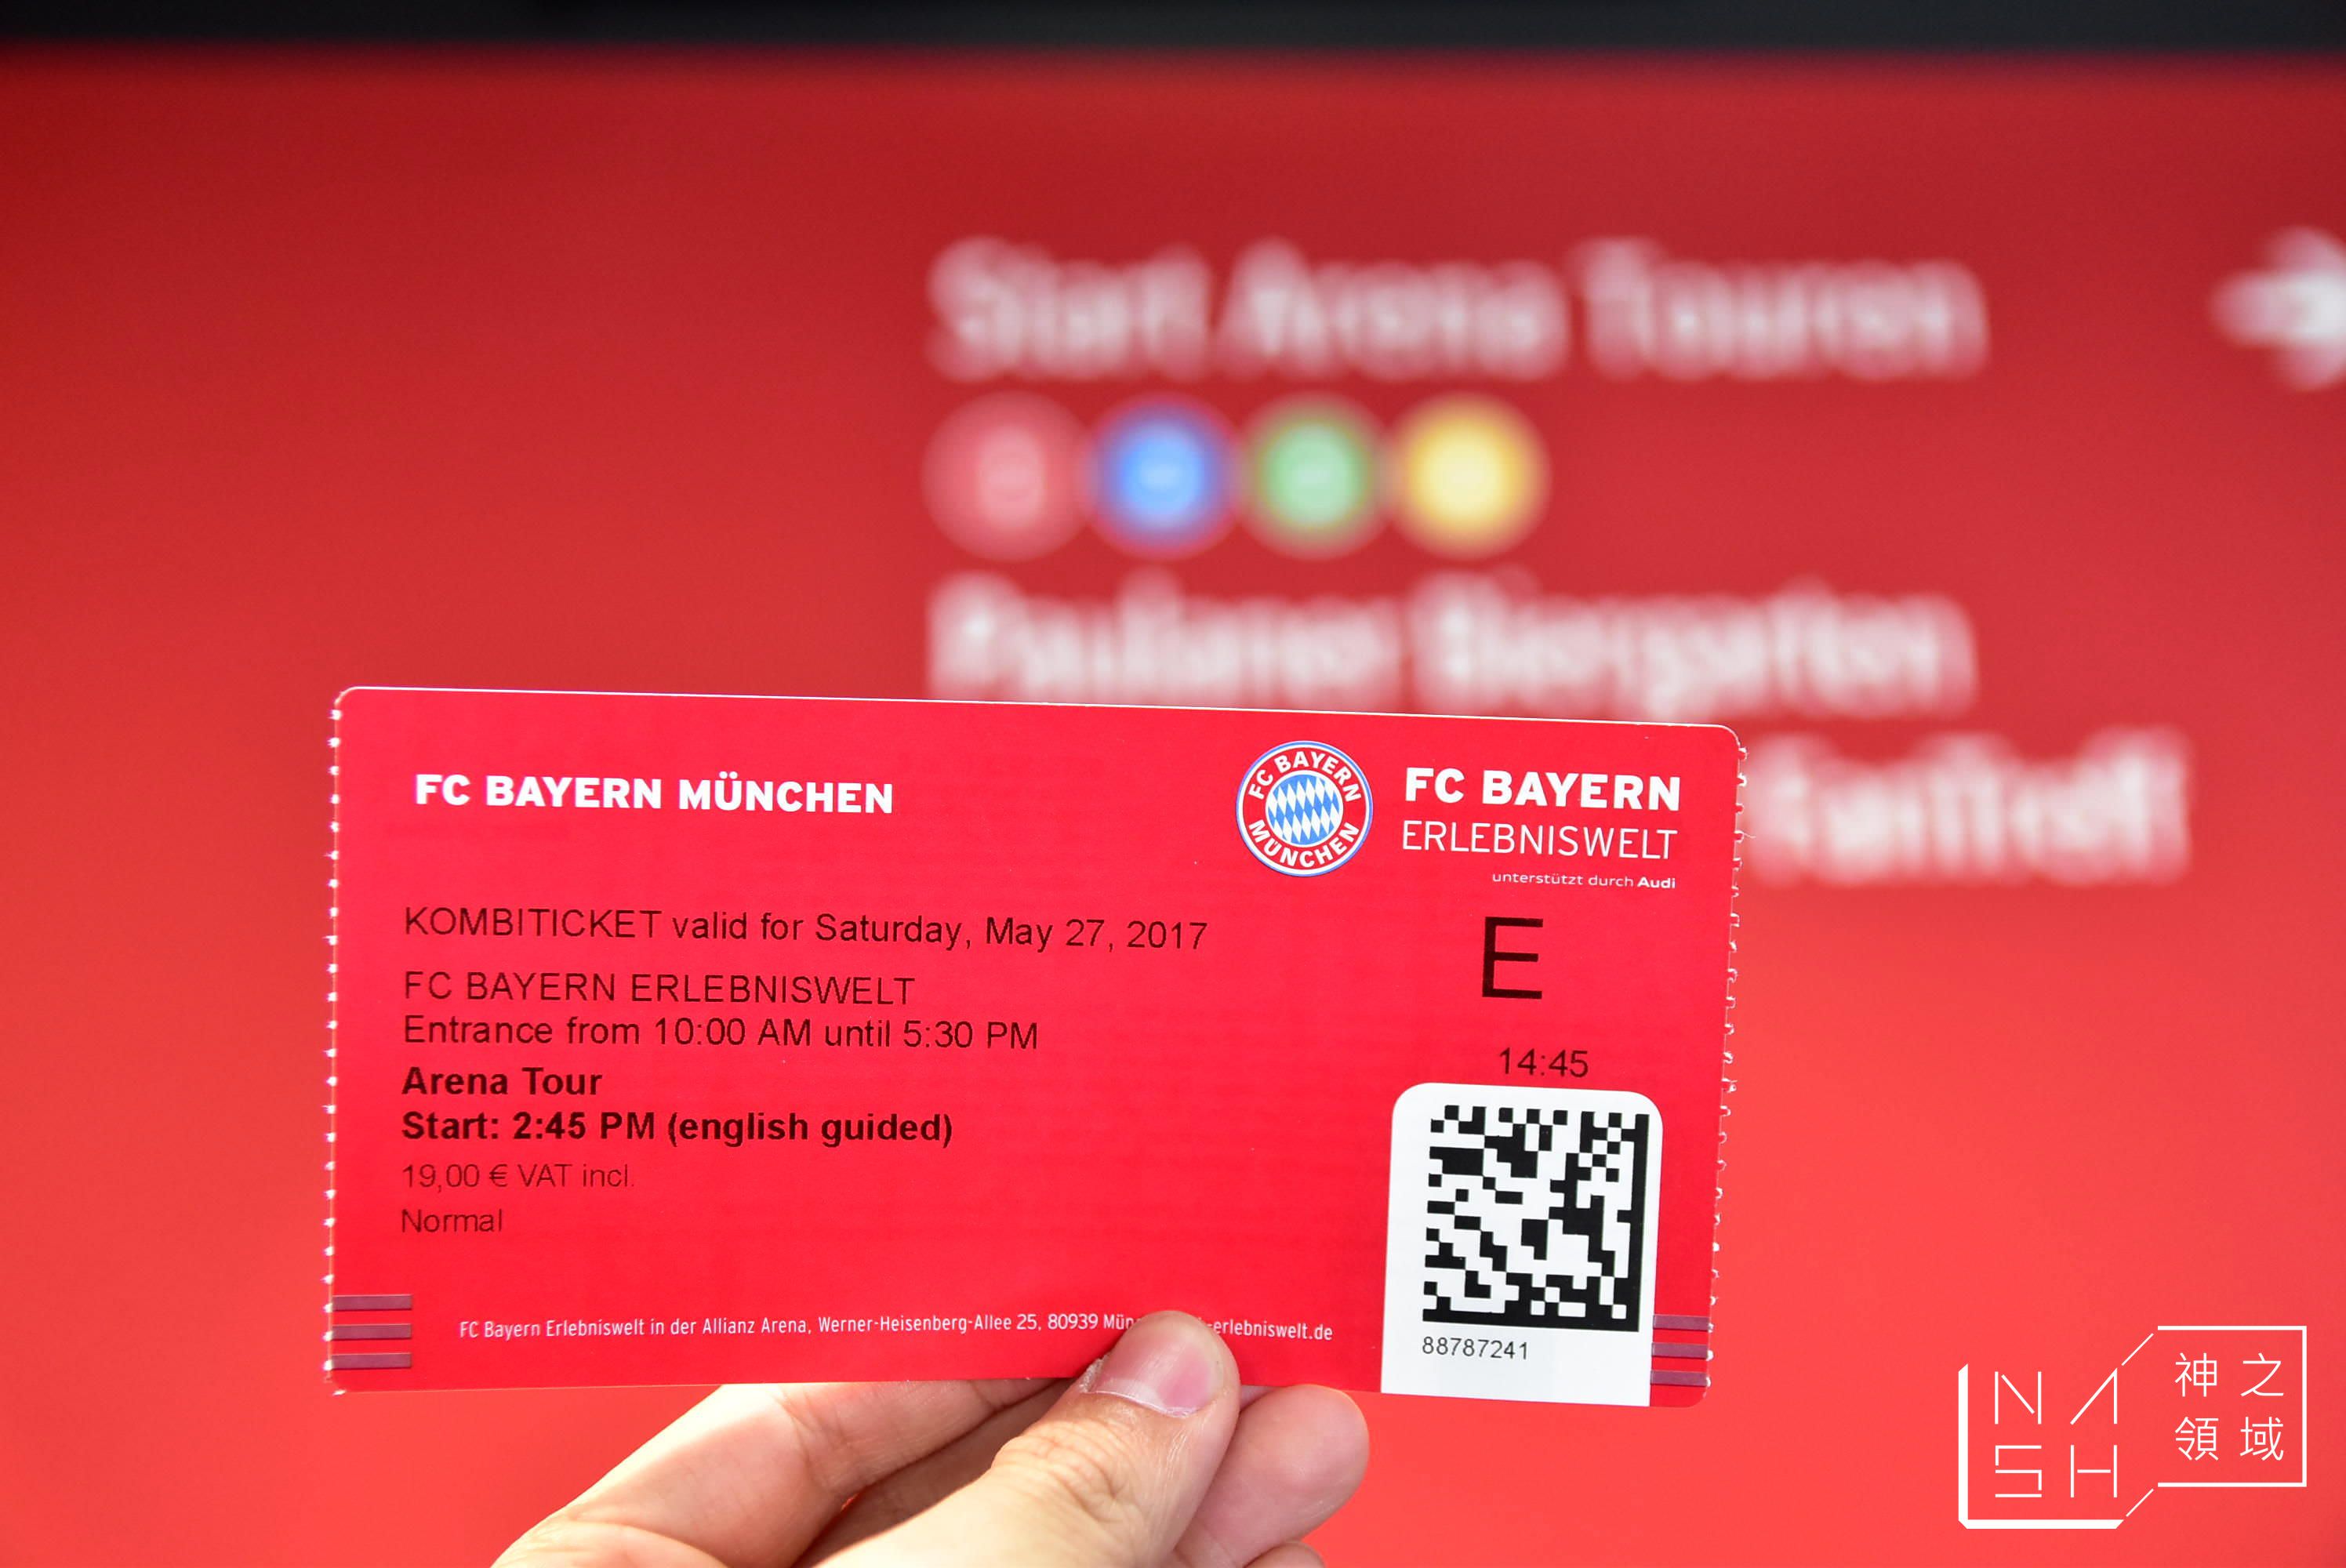 拜仁慕尼黑主場球場導覽,拜仁慕尼黑,拜仁球場導覽,安聯球場導覽